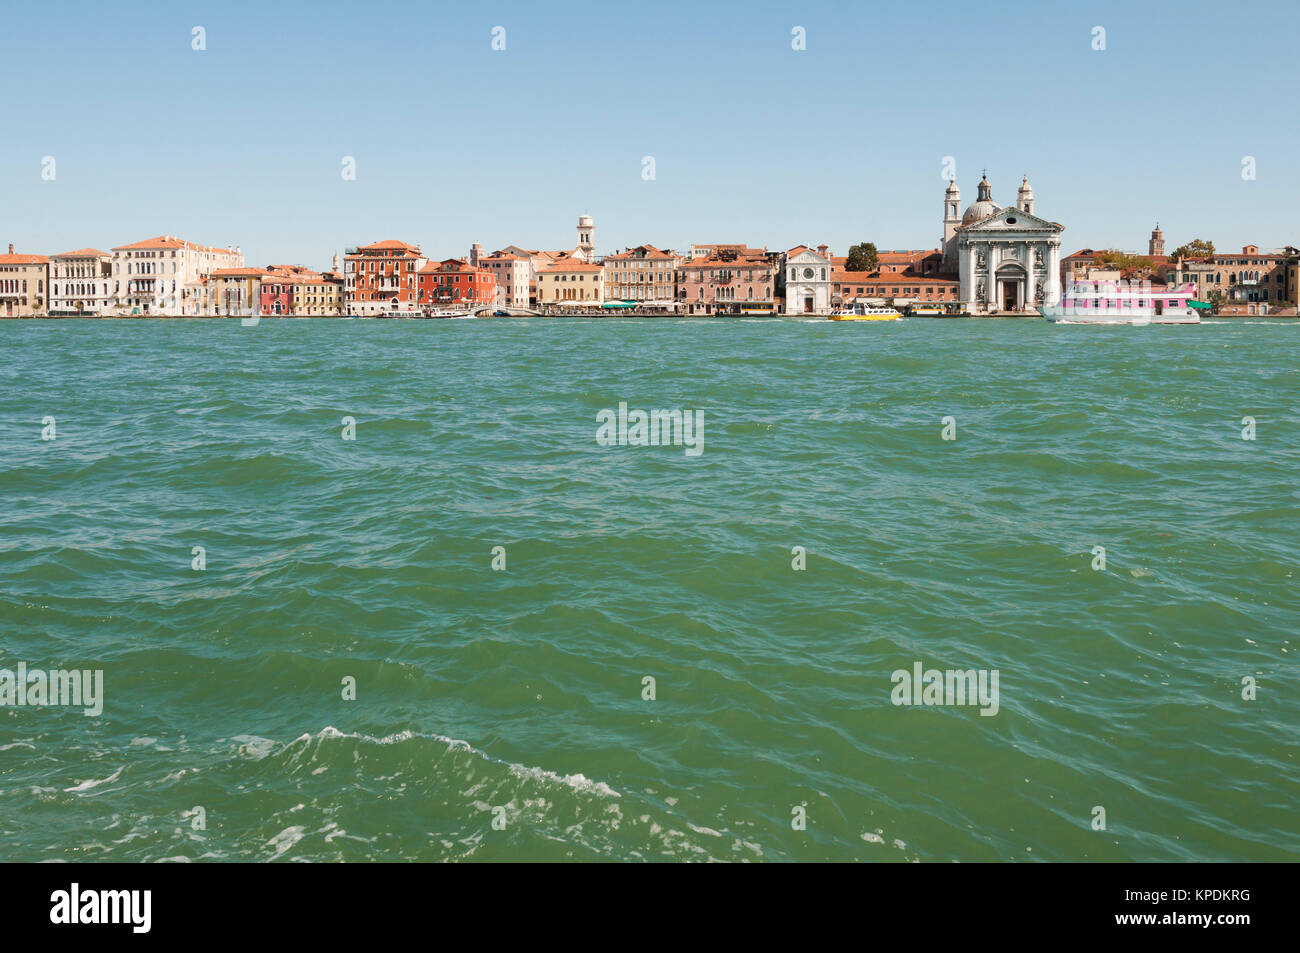 Touristisches Reiseziel, Stadtansicht von Venedig in Italien. Foto Stock